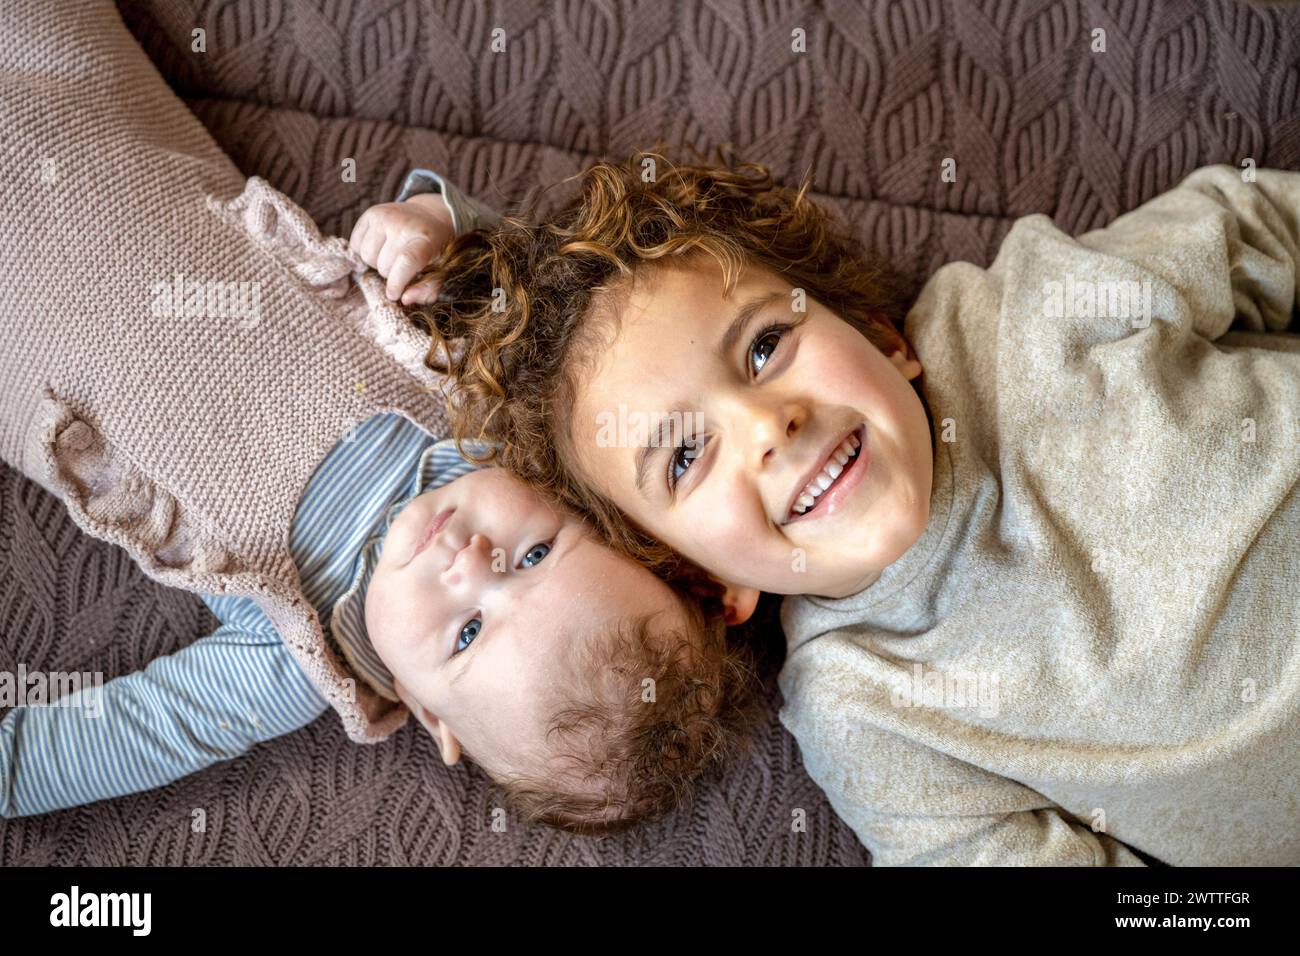 Zwei Geschwister teilen sich einen verspielten Moment auf einer gemütlichen Decke. Stockfoto